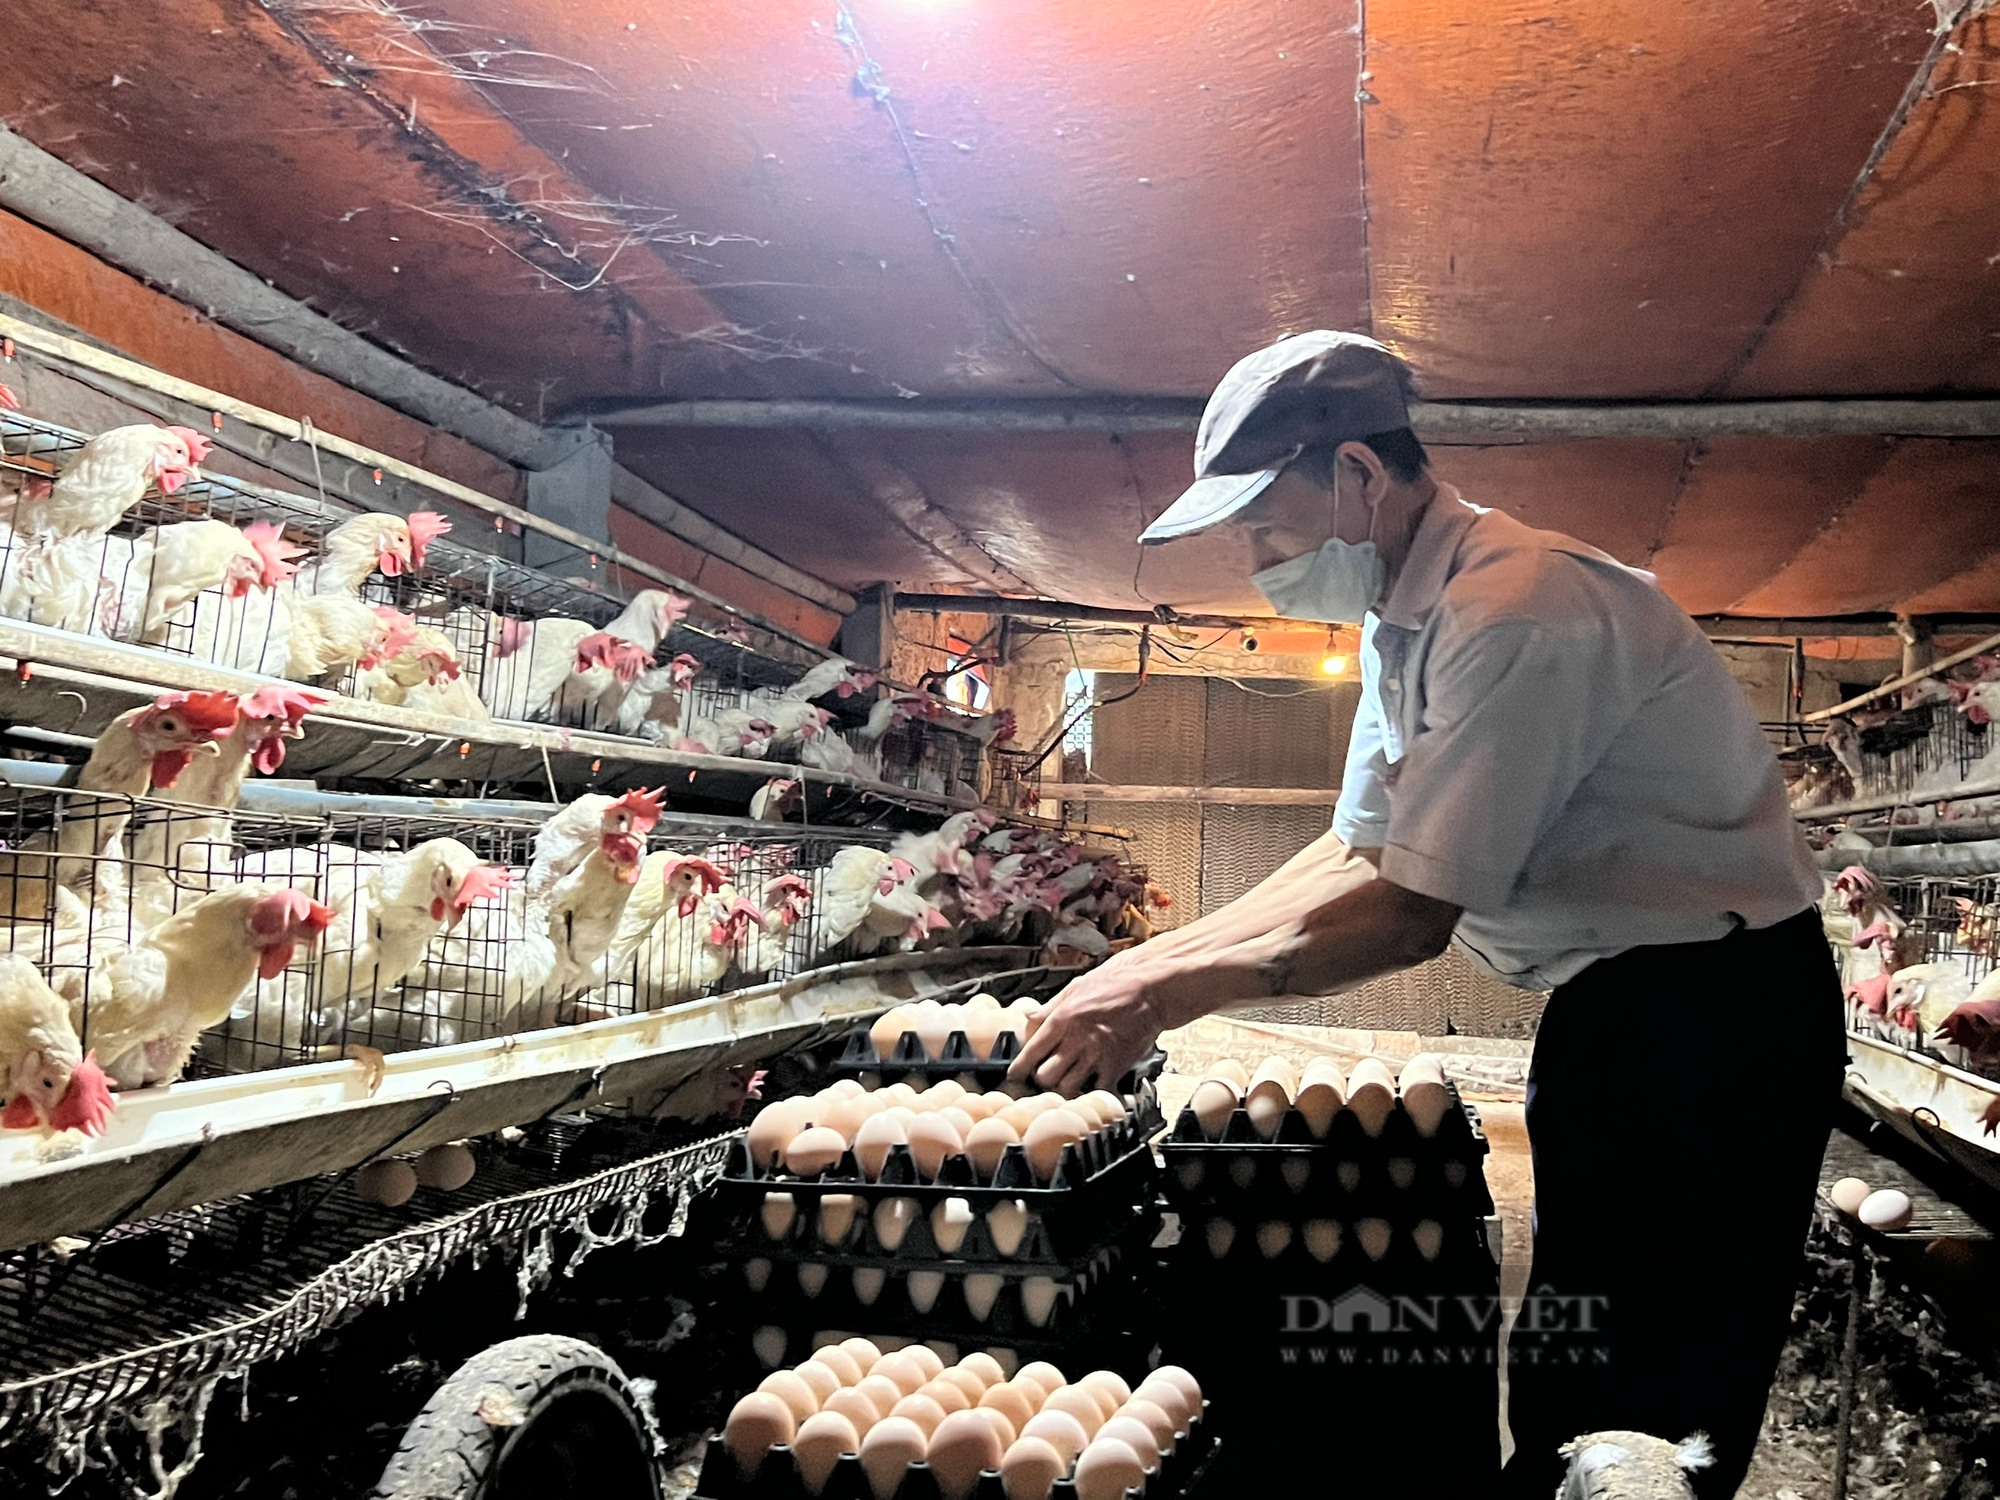 Từ 500 con gà đẻ, sau hơn 10 năm anh nông dân ở Thanh Hóa nhặt hơn 18.000 quả trứng/ngày - Ảnh 3.